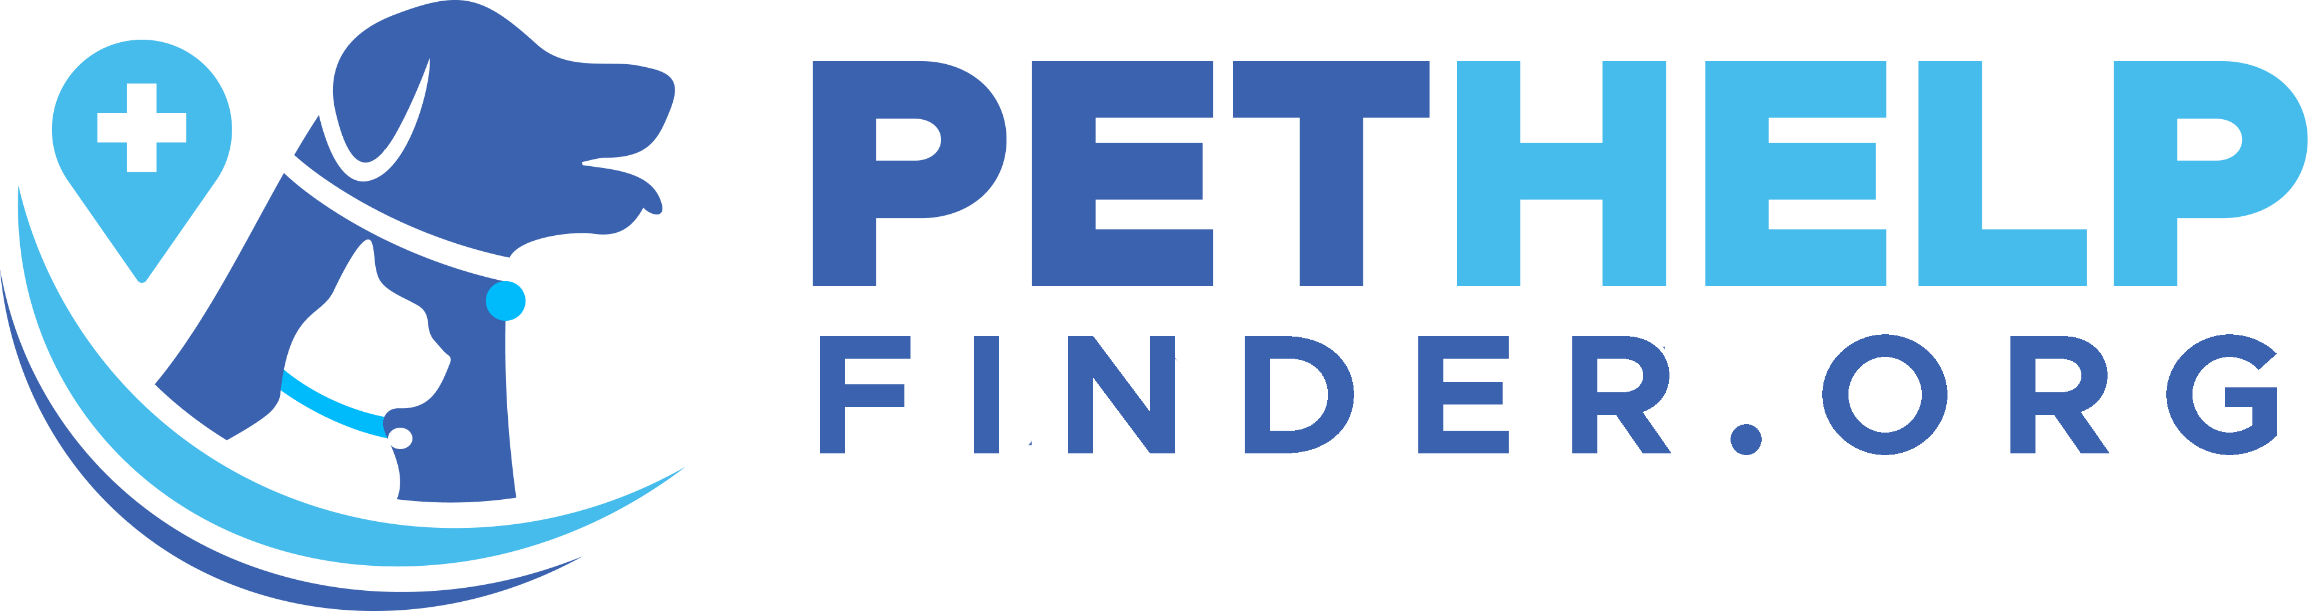 PetHelpFinder.Org